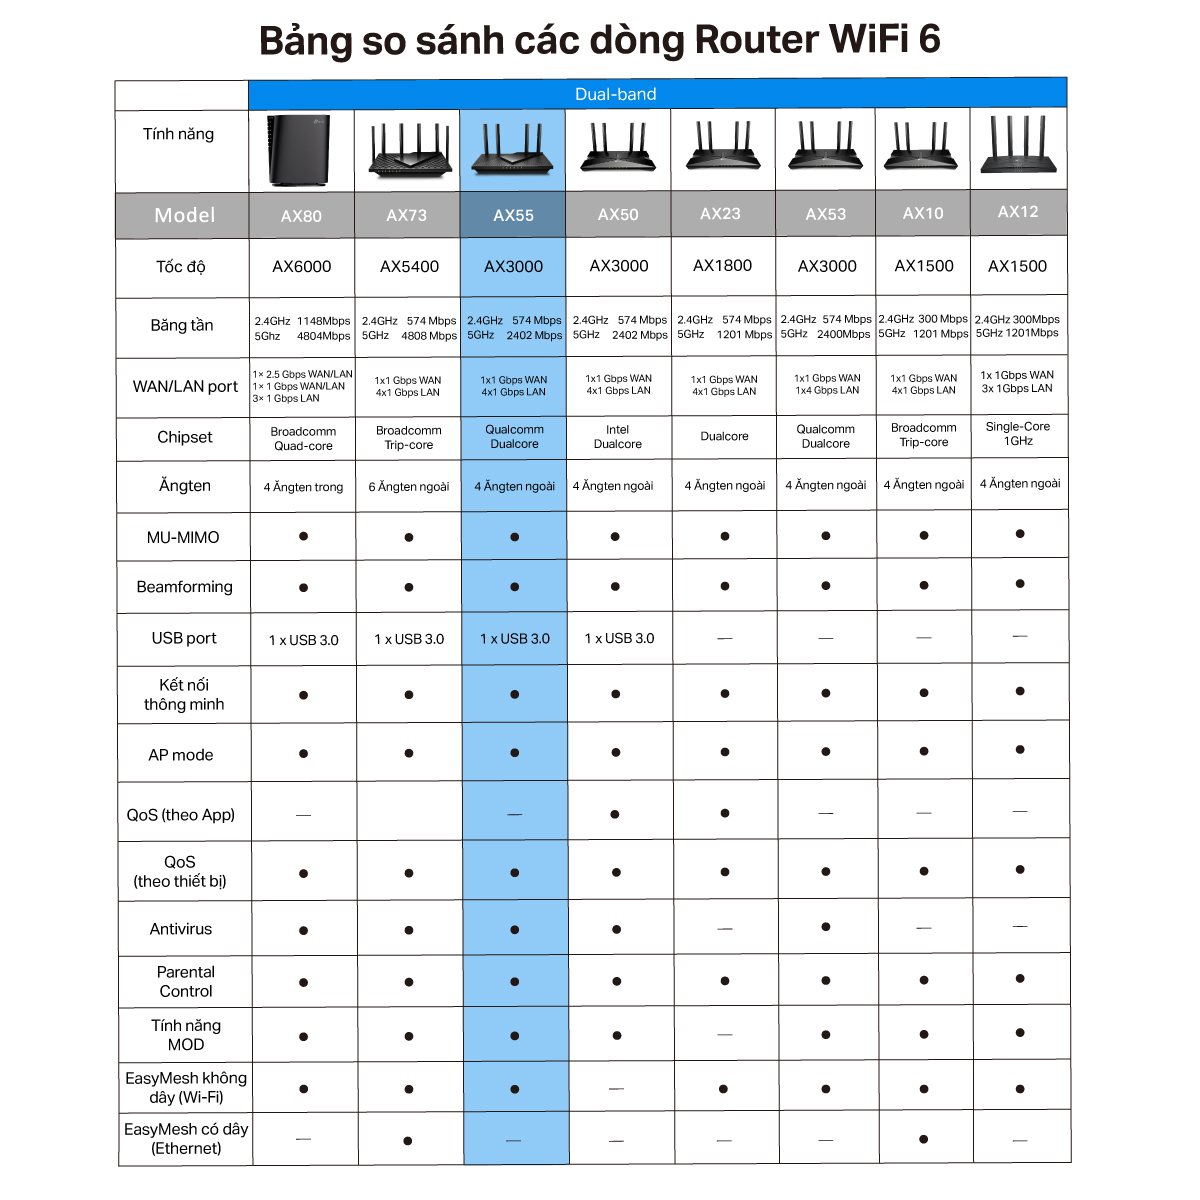 Bộ Phát Wifi TP-Link Archer AX55 Chuẩn Wi-Fi 6 AX3000 - Hàng Chính Hãng